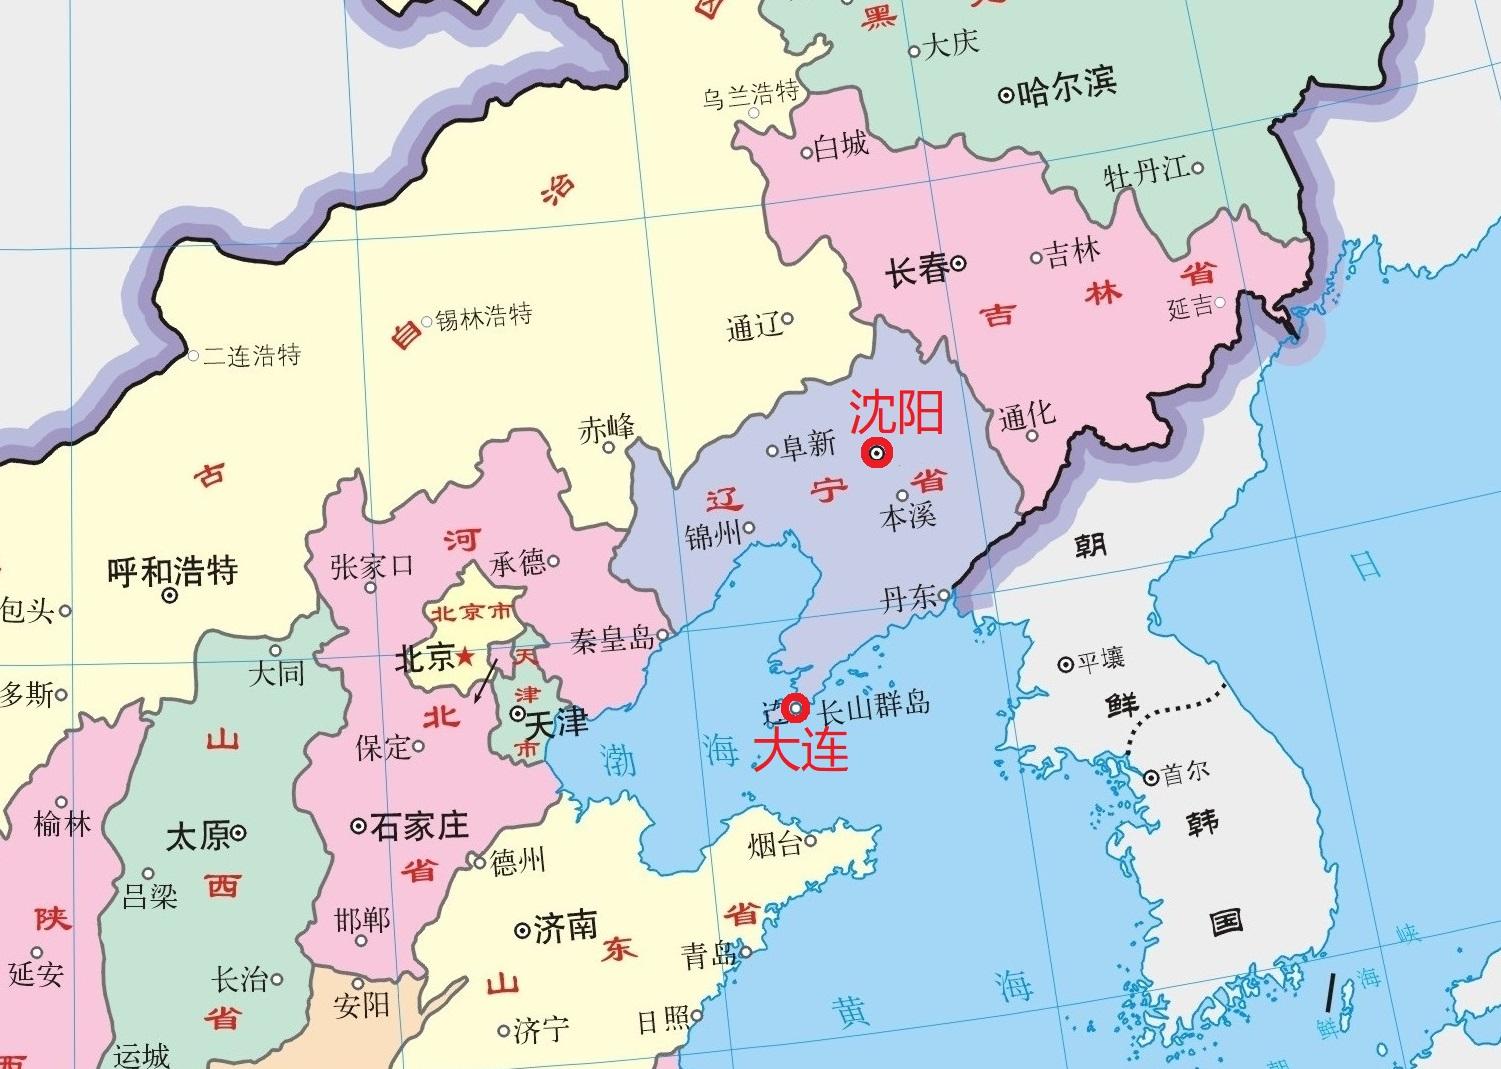 辽宁省历史和地理变化图文解读 - 知乎